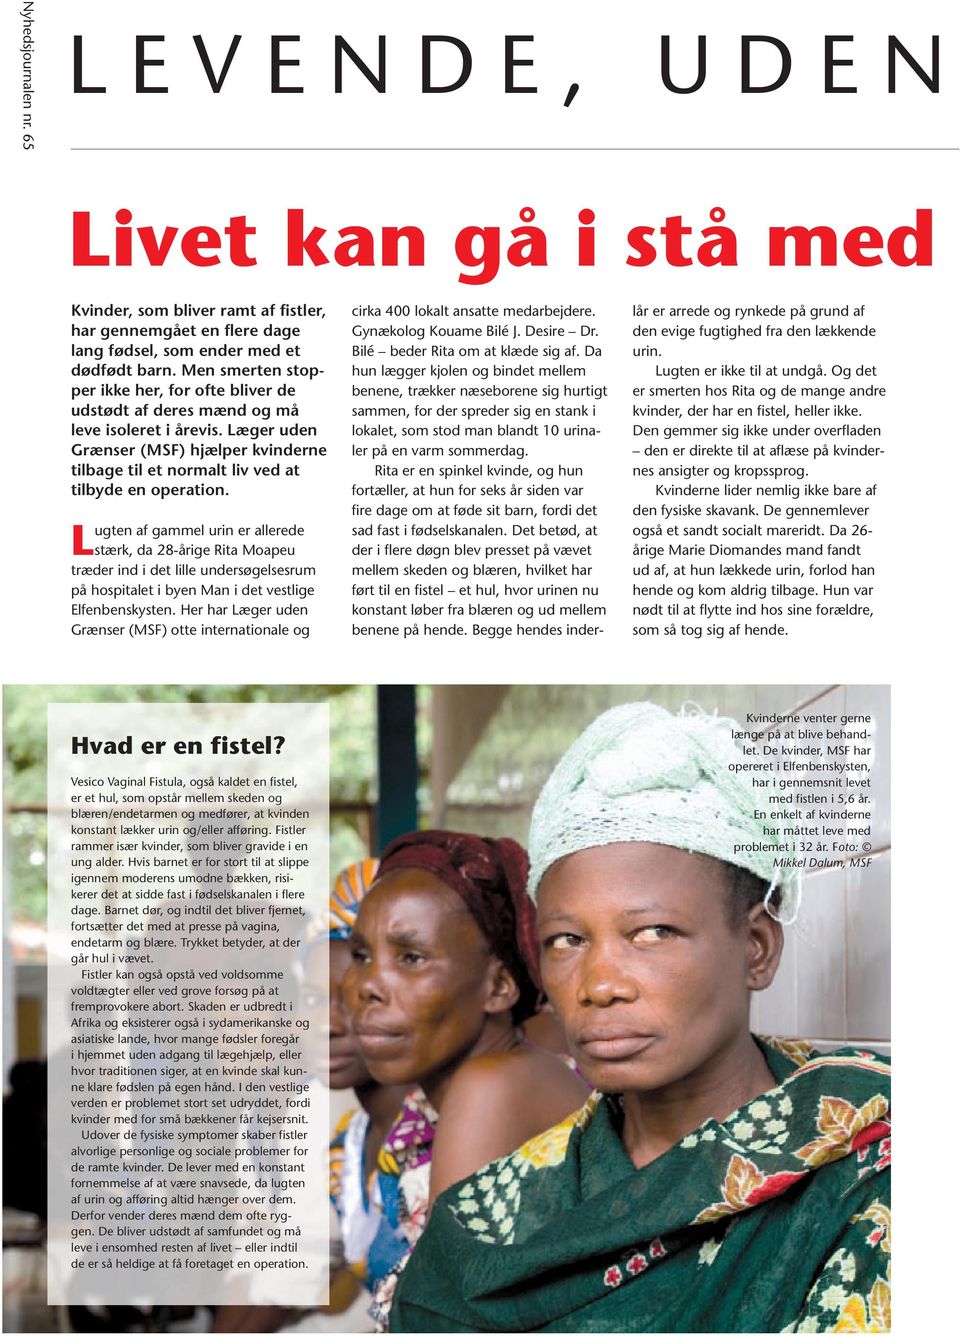 Lugten af gammel urin er allerede stærk, da 28-årige Rita Moapeu træder ind i det lille undersøgelsesrum på hospitalet i byen Man i det vestlige Elfenbenskysten.